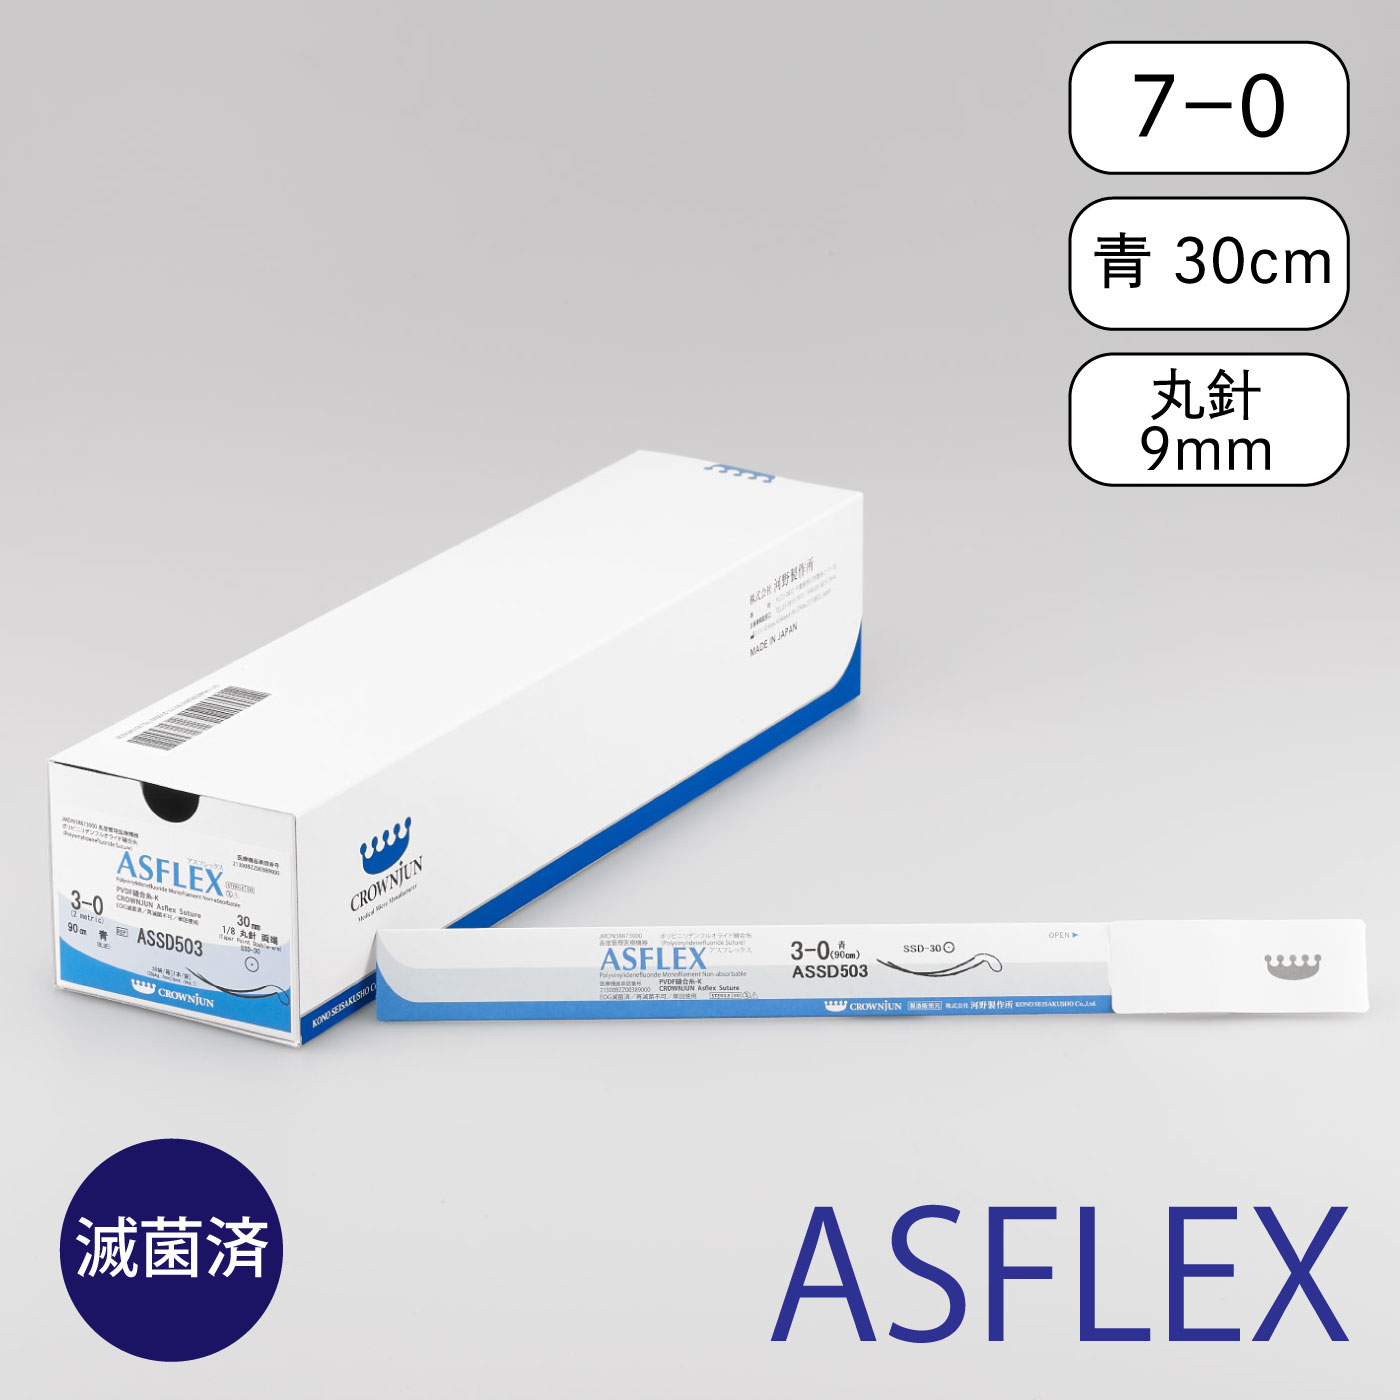 針付アスフレックス R-９mm/7-0/60cm/青/モノフィラメント非吸収糸【AR5L7】